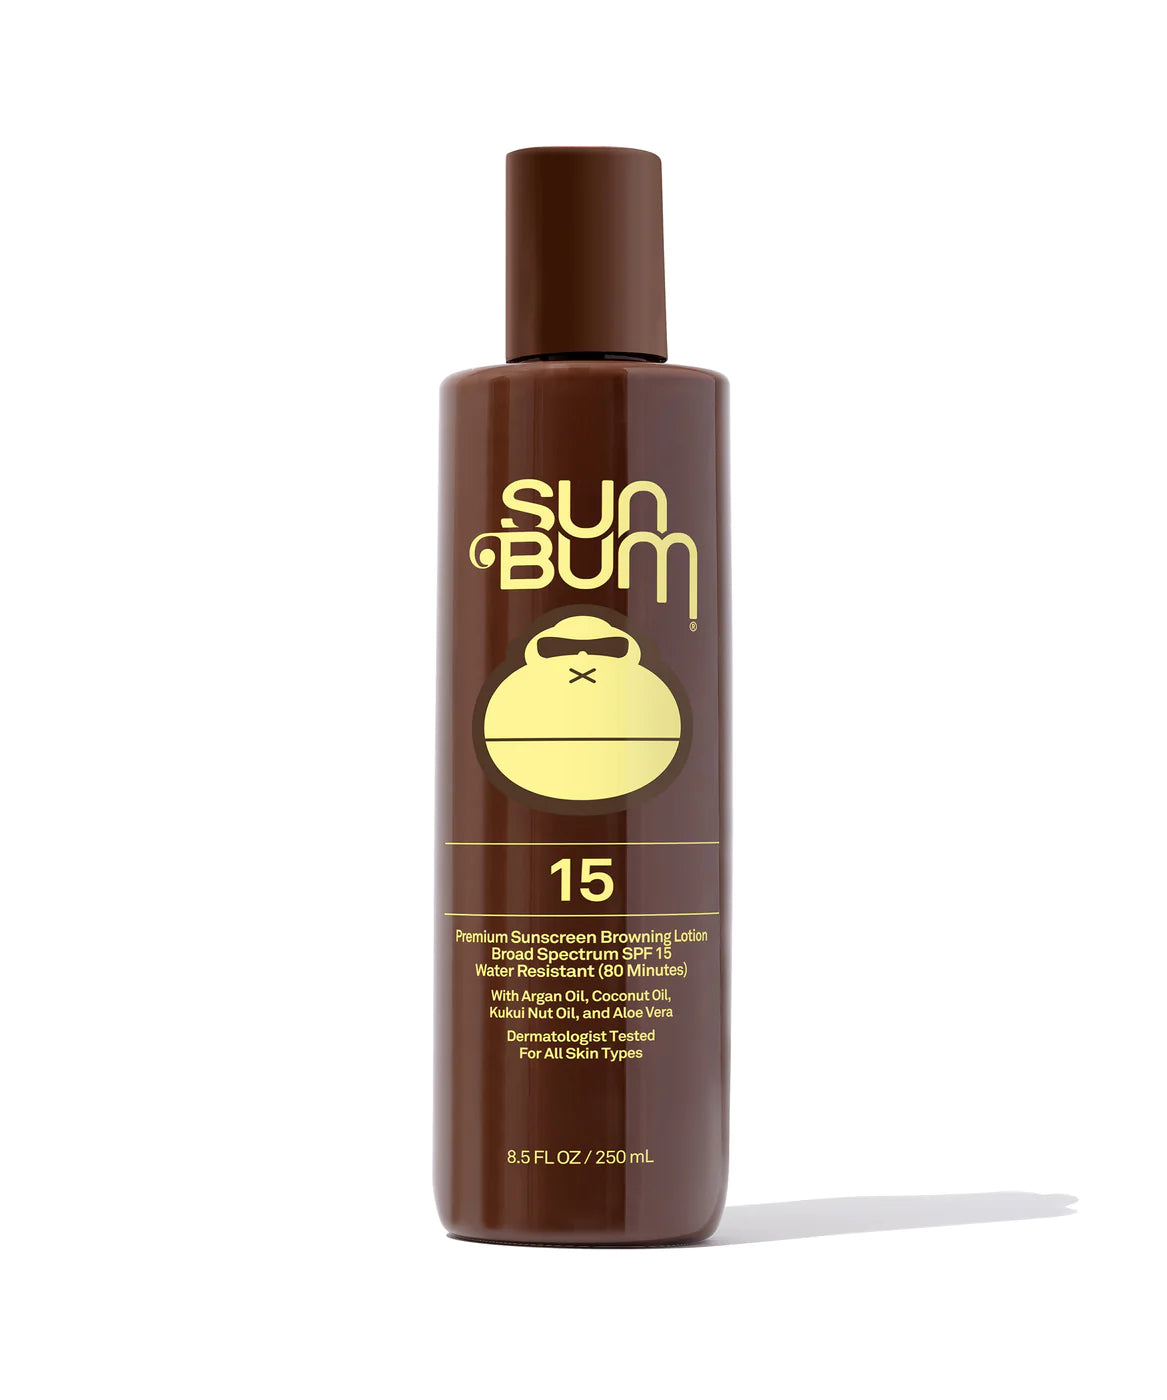 SUN BUM SPF 15 Sunscreen Browning Lotion Sunscreen Sun Bum 